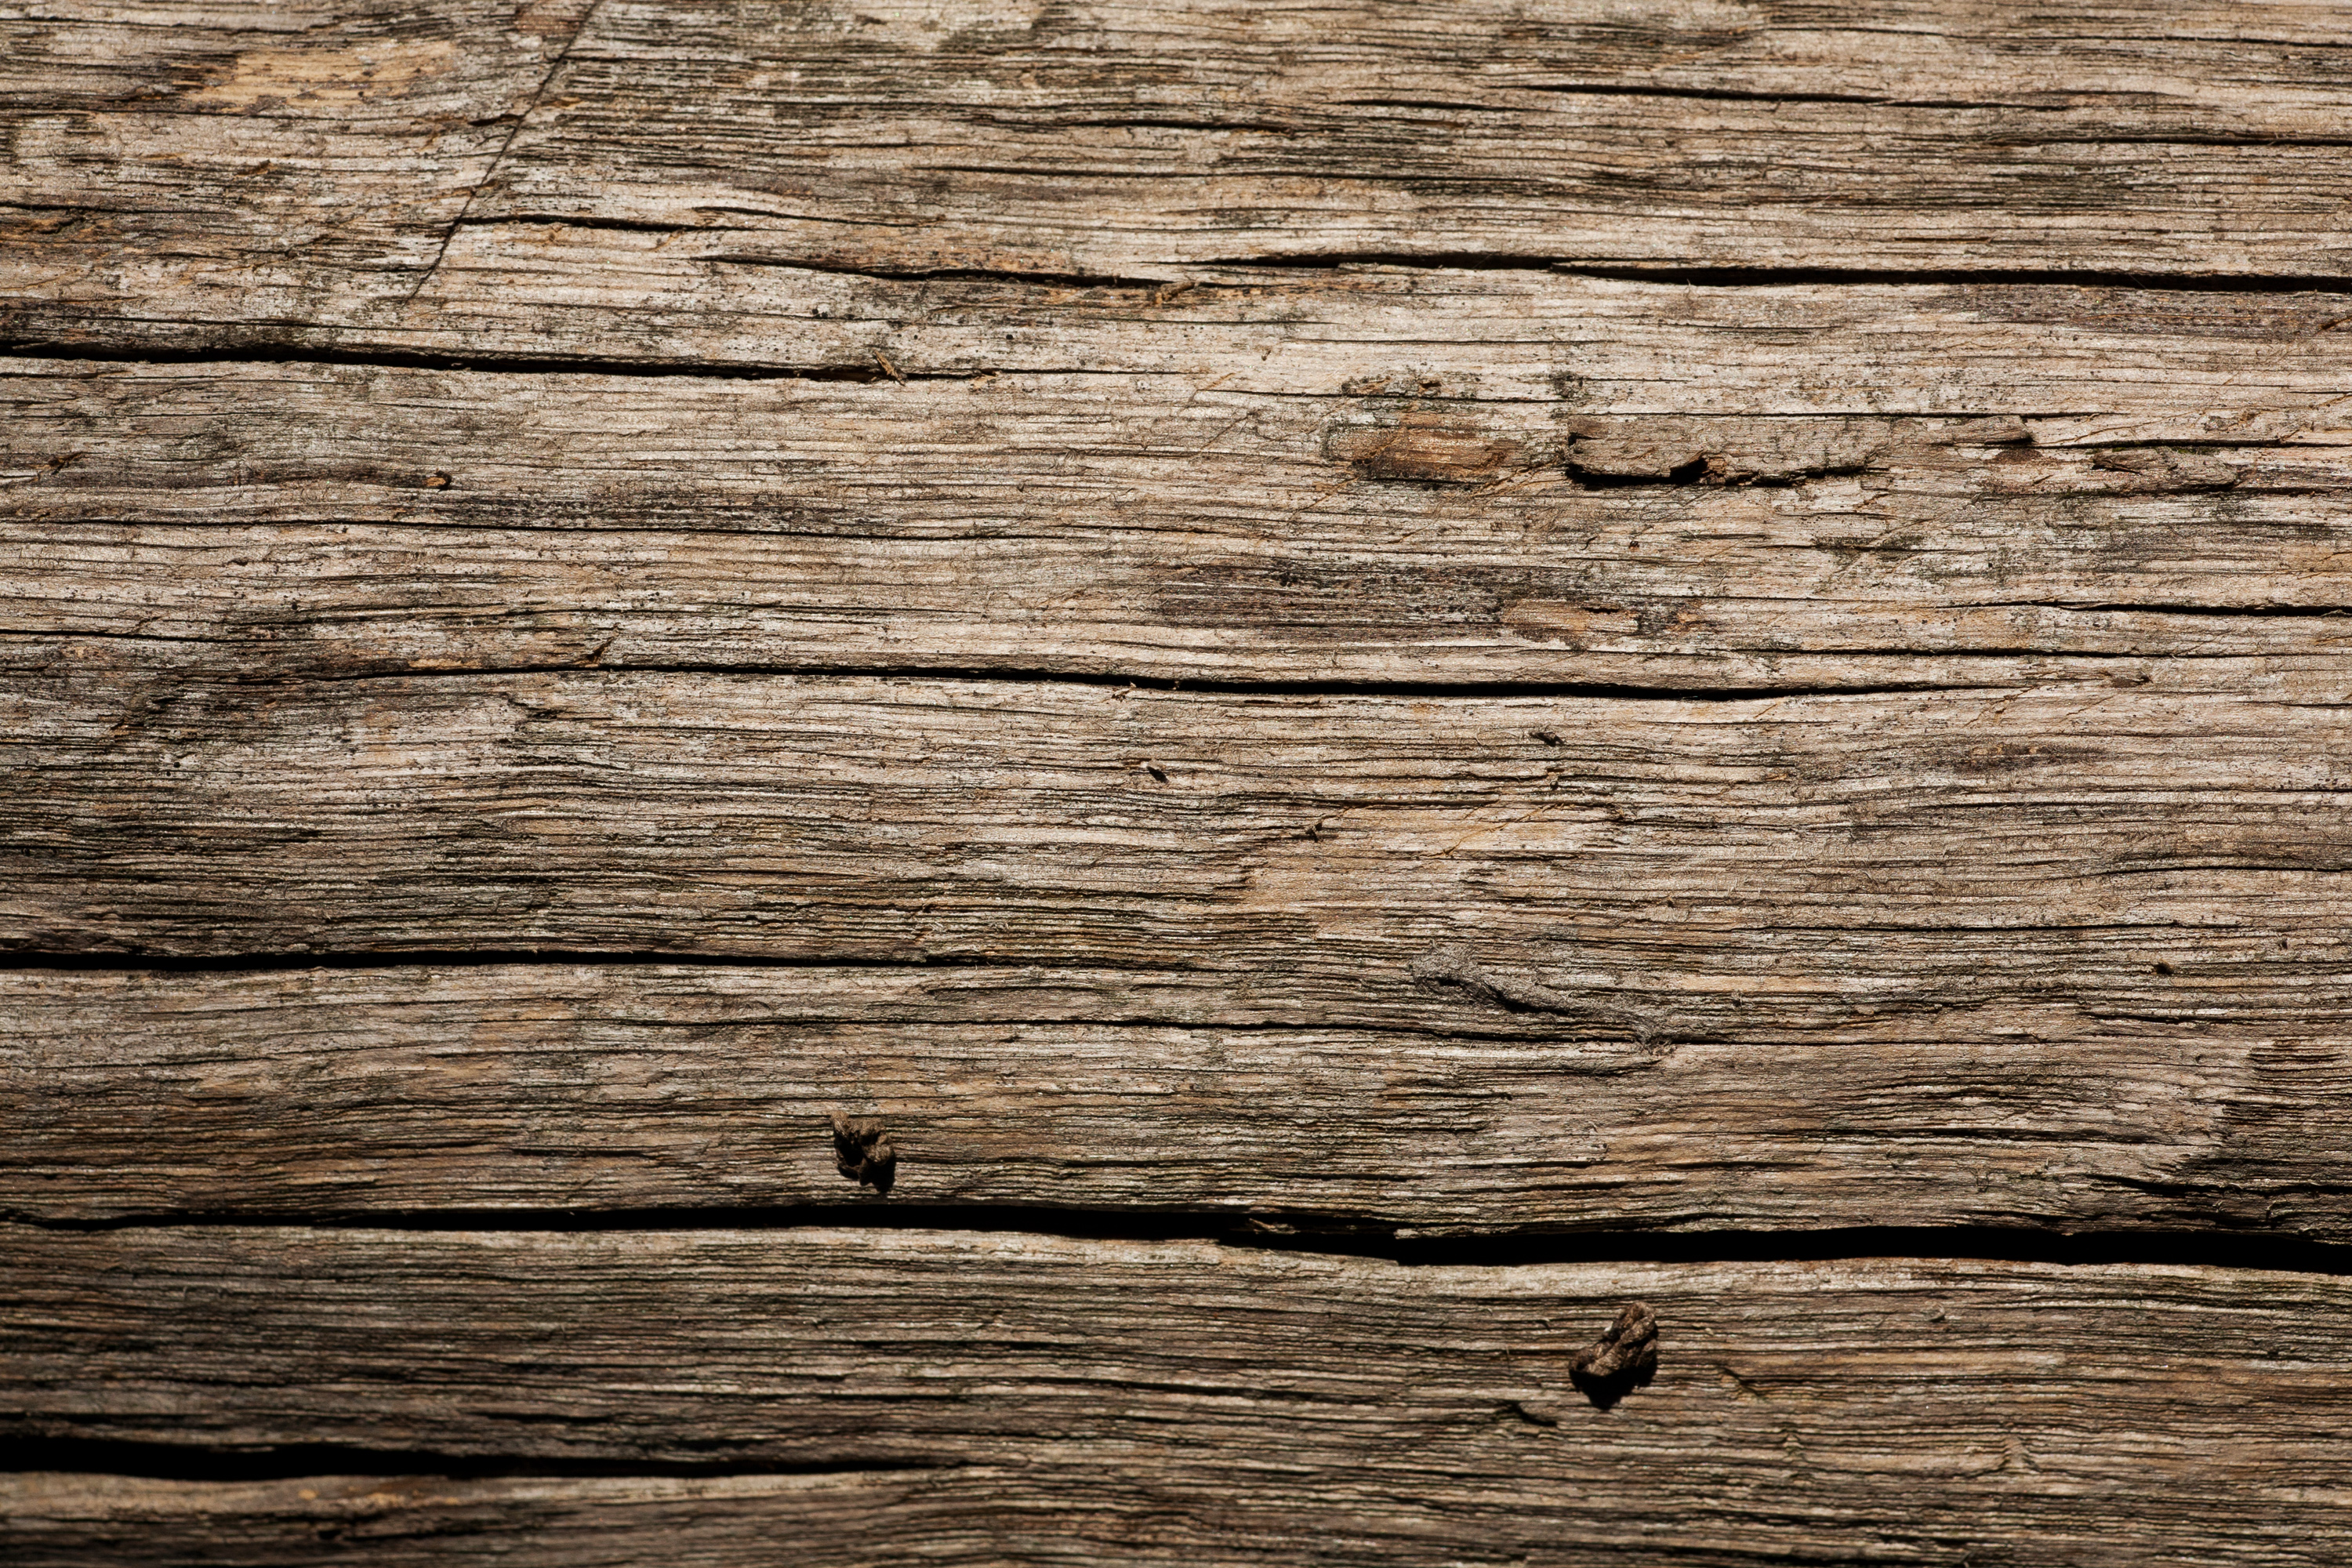 Bề mặt gỗ cũ: Bề mặt gỗ cũ có thể tạo ra những vẻ đẹp tự nhiên đầy sắc màu và độc đáo. Hãy xem qua những tấm hình đầy ấn tượng từ bề mặt gỗ cũ để khám phá ra những ưu điểm thú vị của chúng trong trang trí nội thất.